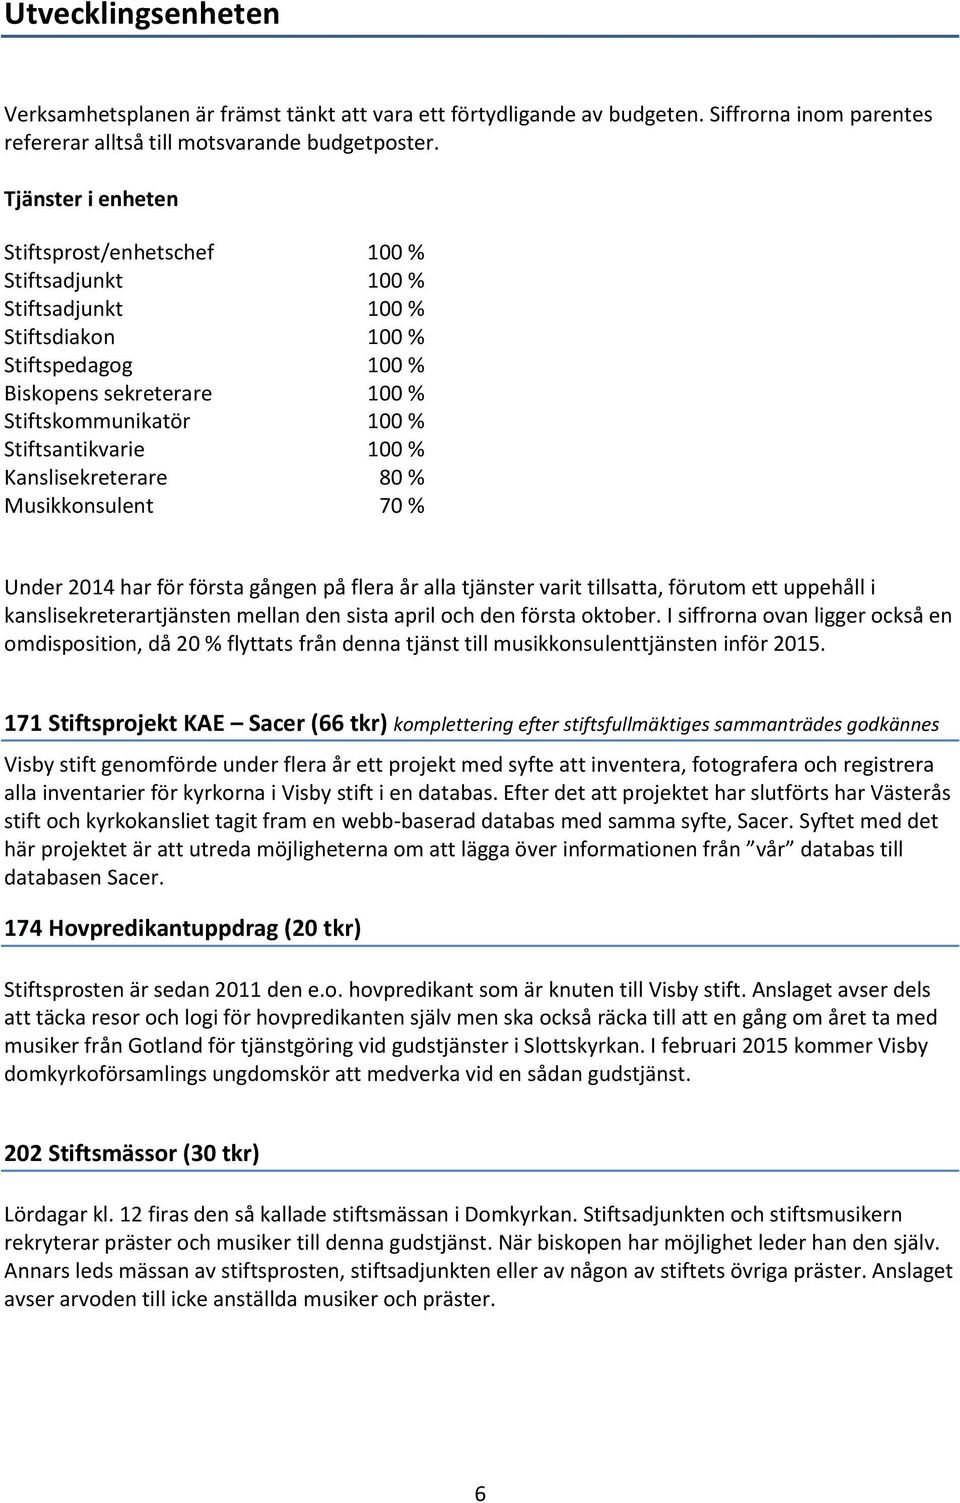 Verksamhetsplan och budget för Visby stift PDF Free Download